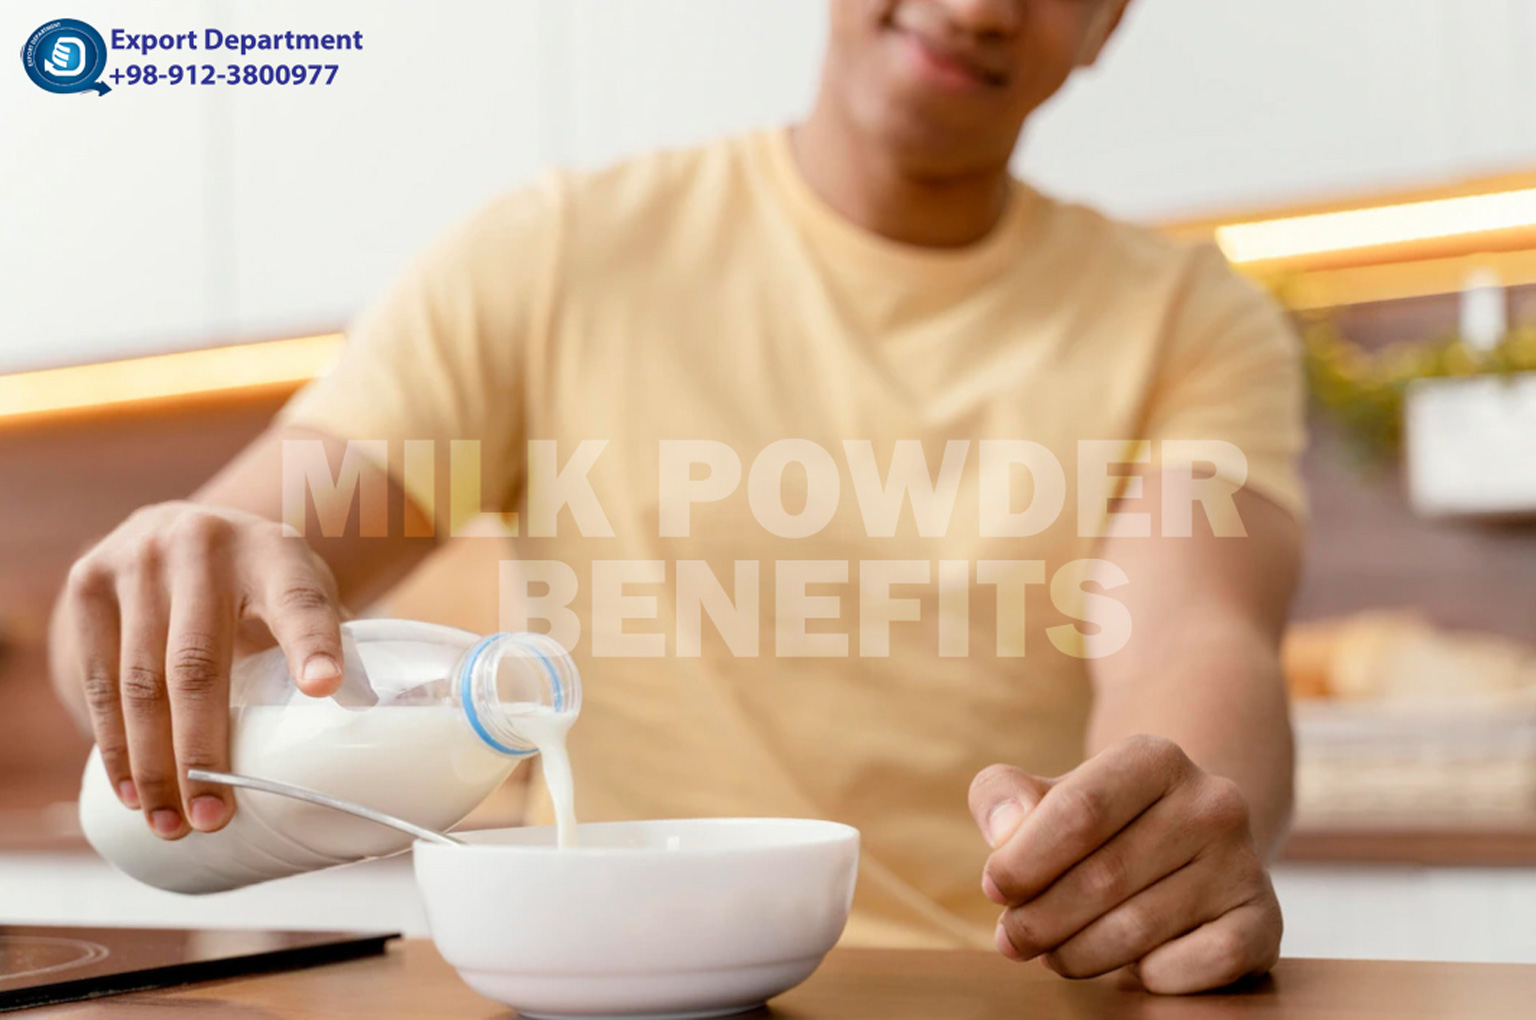 Шесть научно подтвержденных преимуществ высококачественного сухого молока